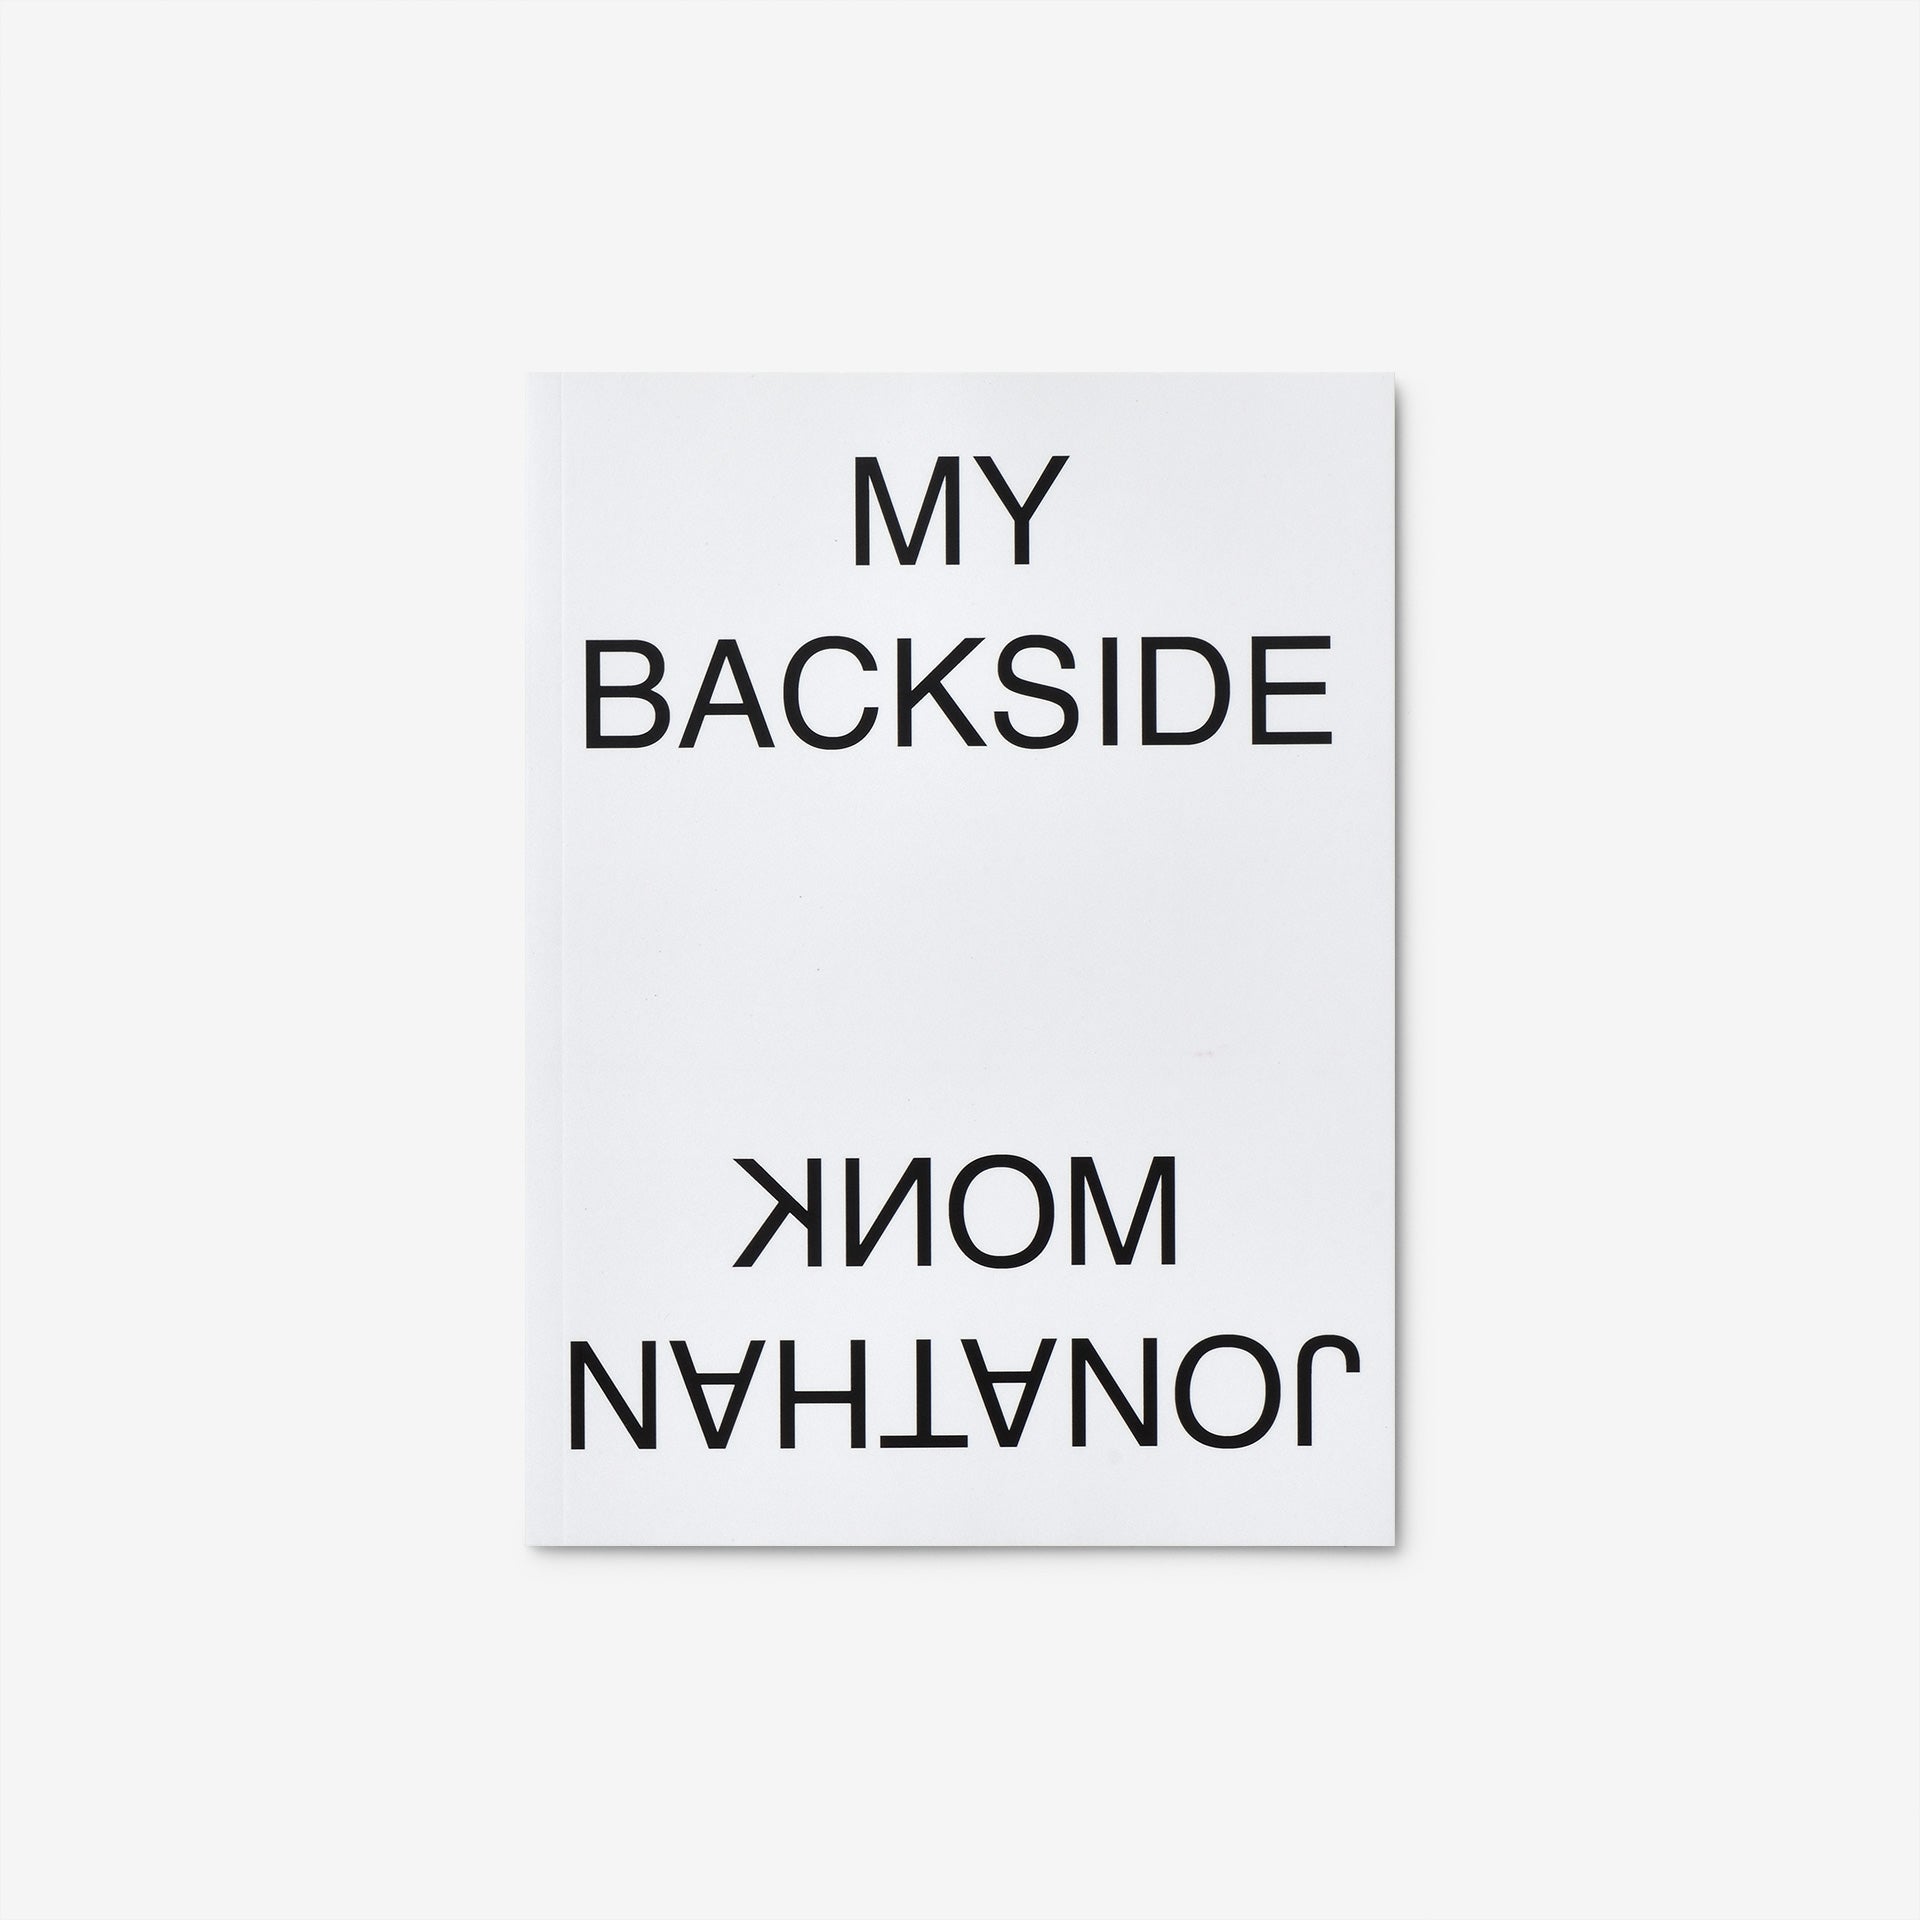 Jonathan Monk: My Backside